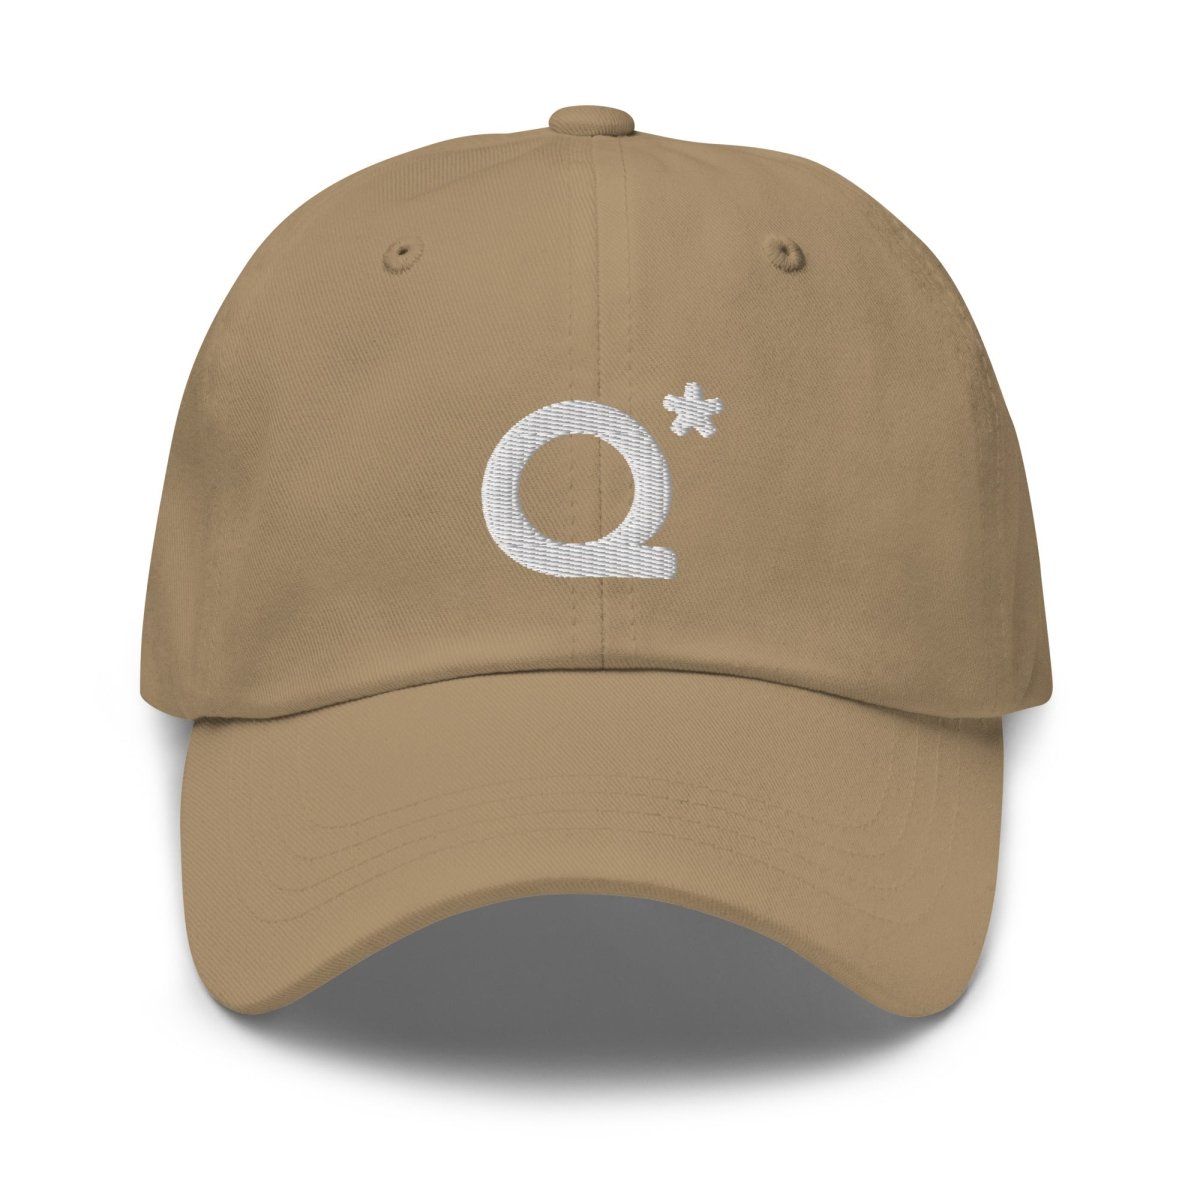 Q* (Q - Star) Embroidered Cap 1 - Khaki - AI Store